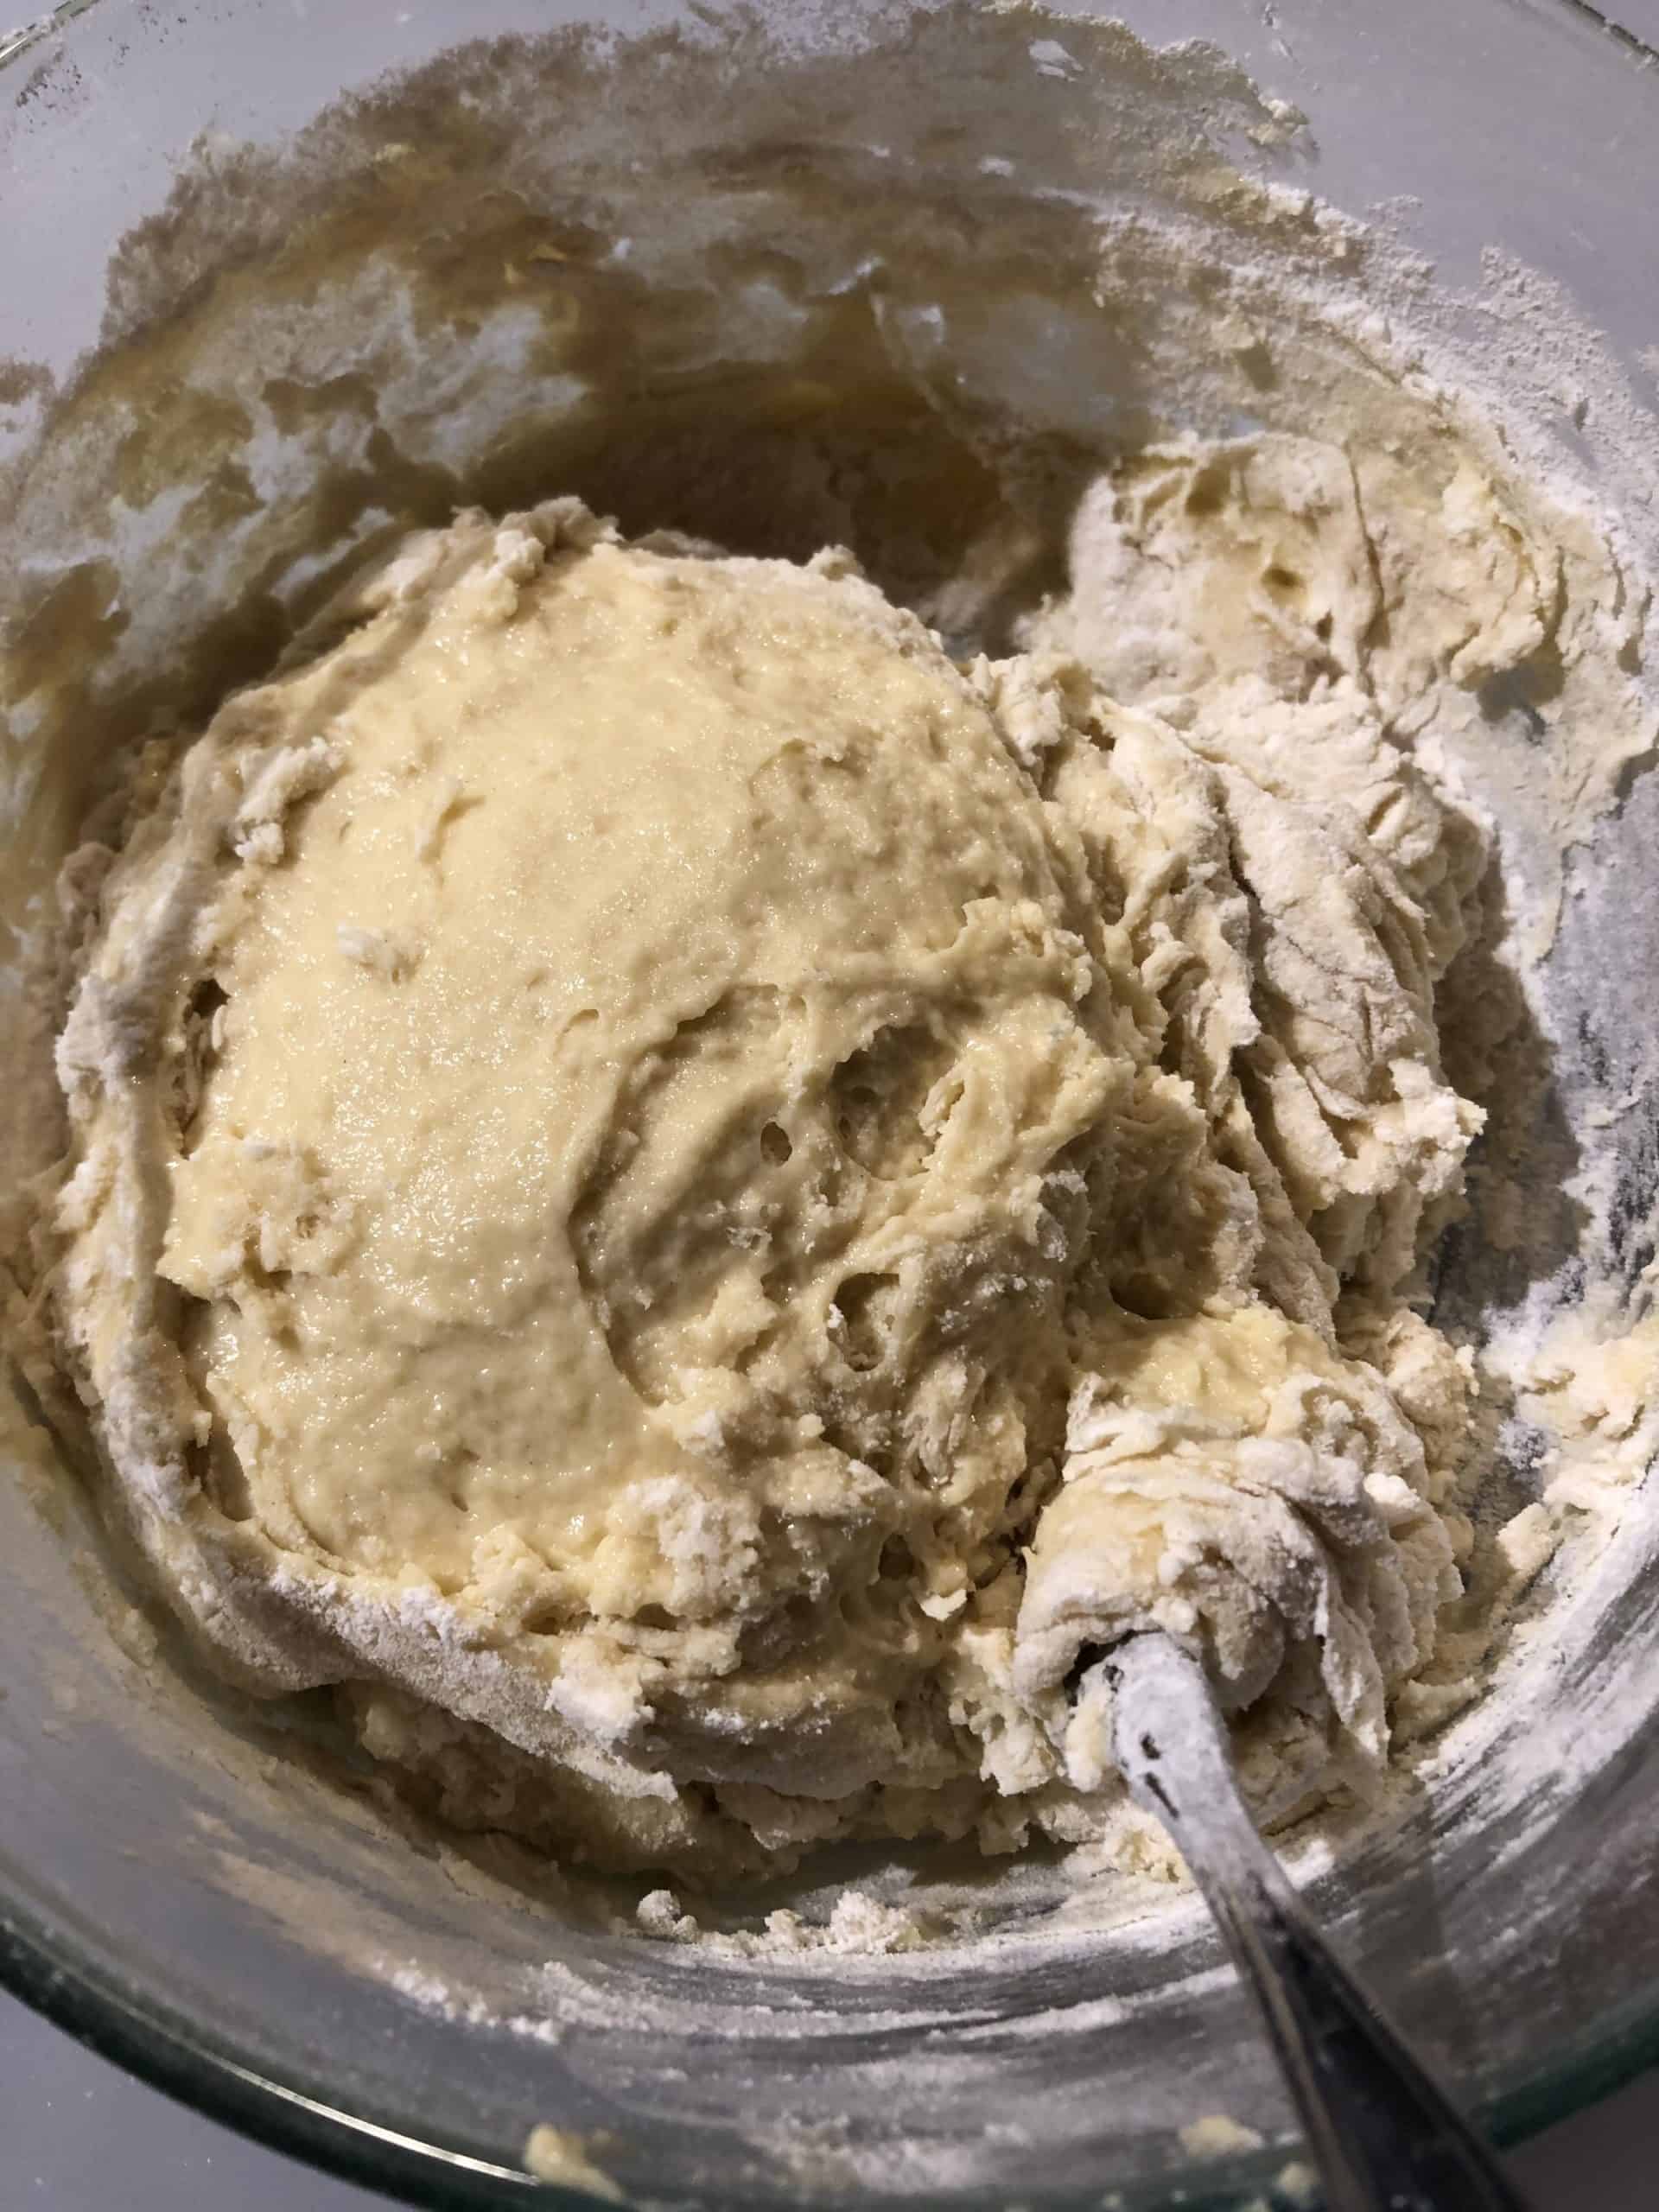 Egg/Flour dough